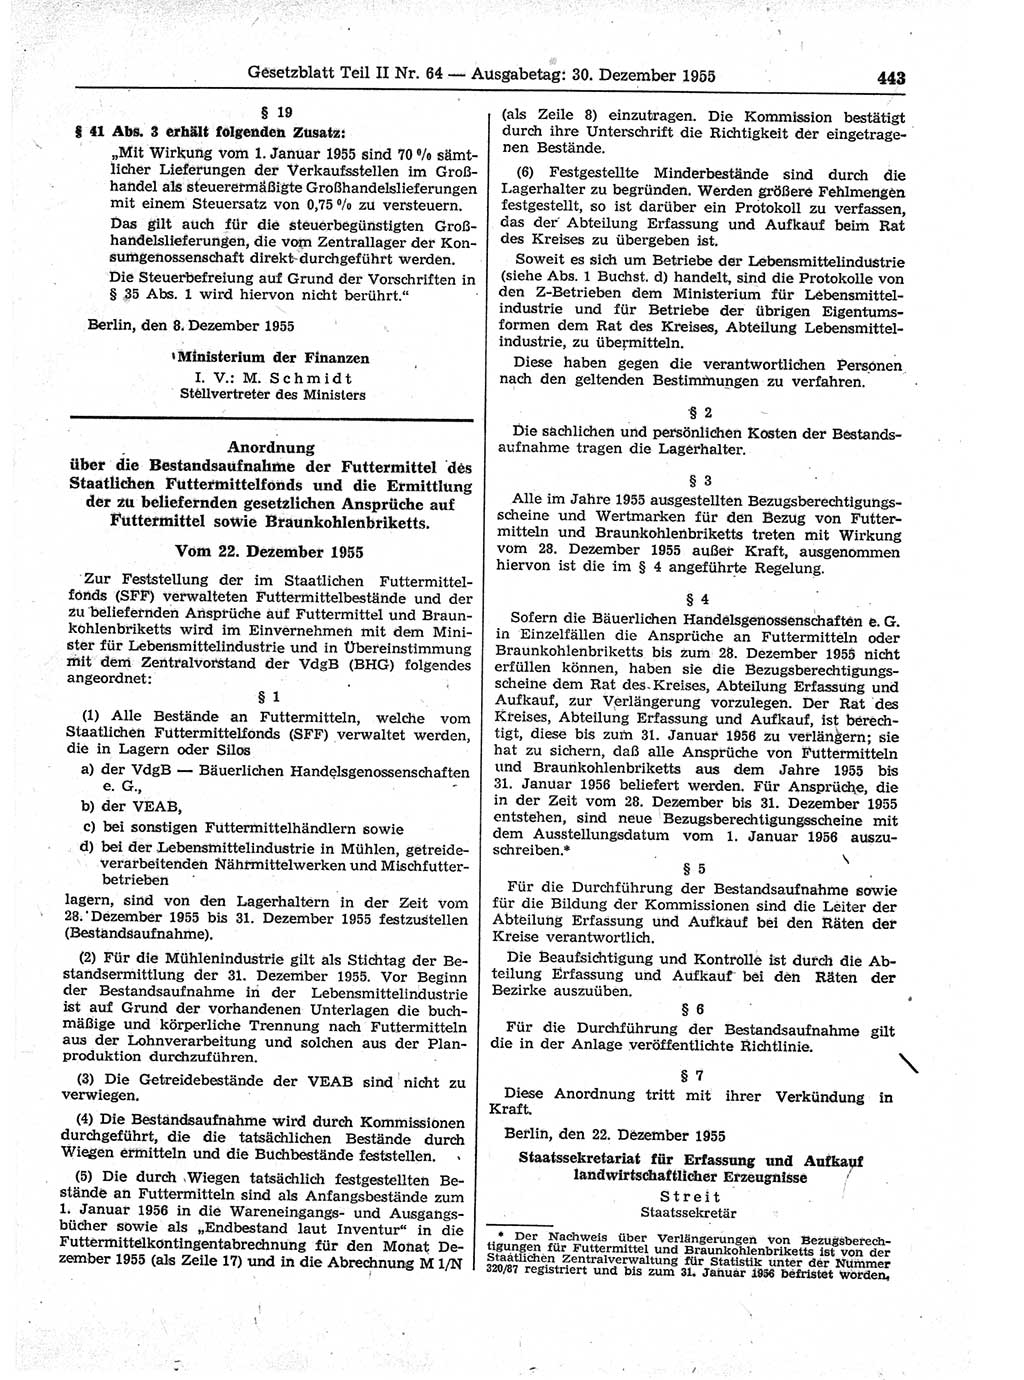 Gesetzblatt (GBl.) der Deutschen Demokratischen Republik (DDR) Teil ⅠⅠ 1955, Seite 443 (GBl. DDR ⅠⅠ 1955, S. 443)